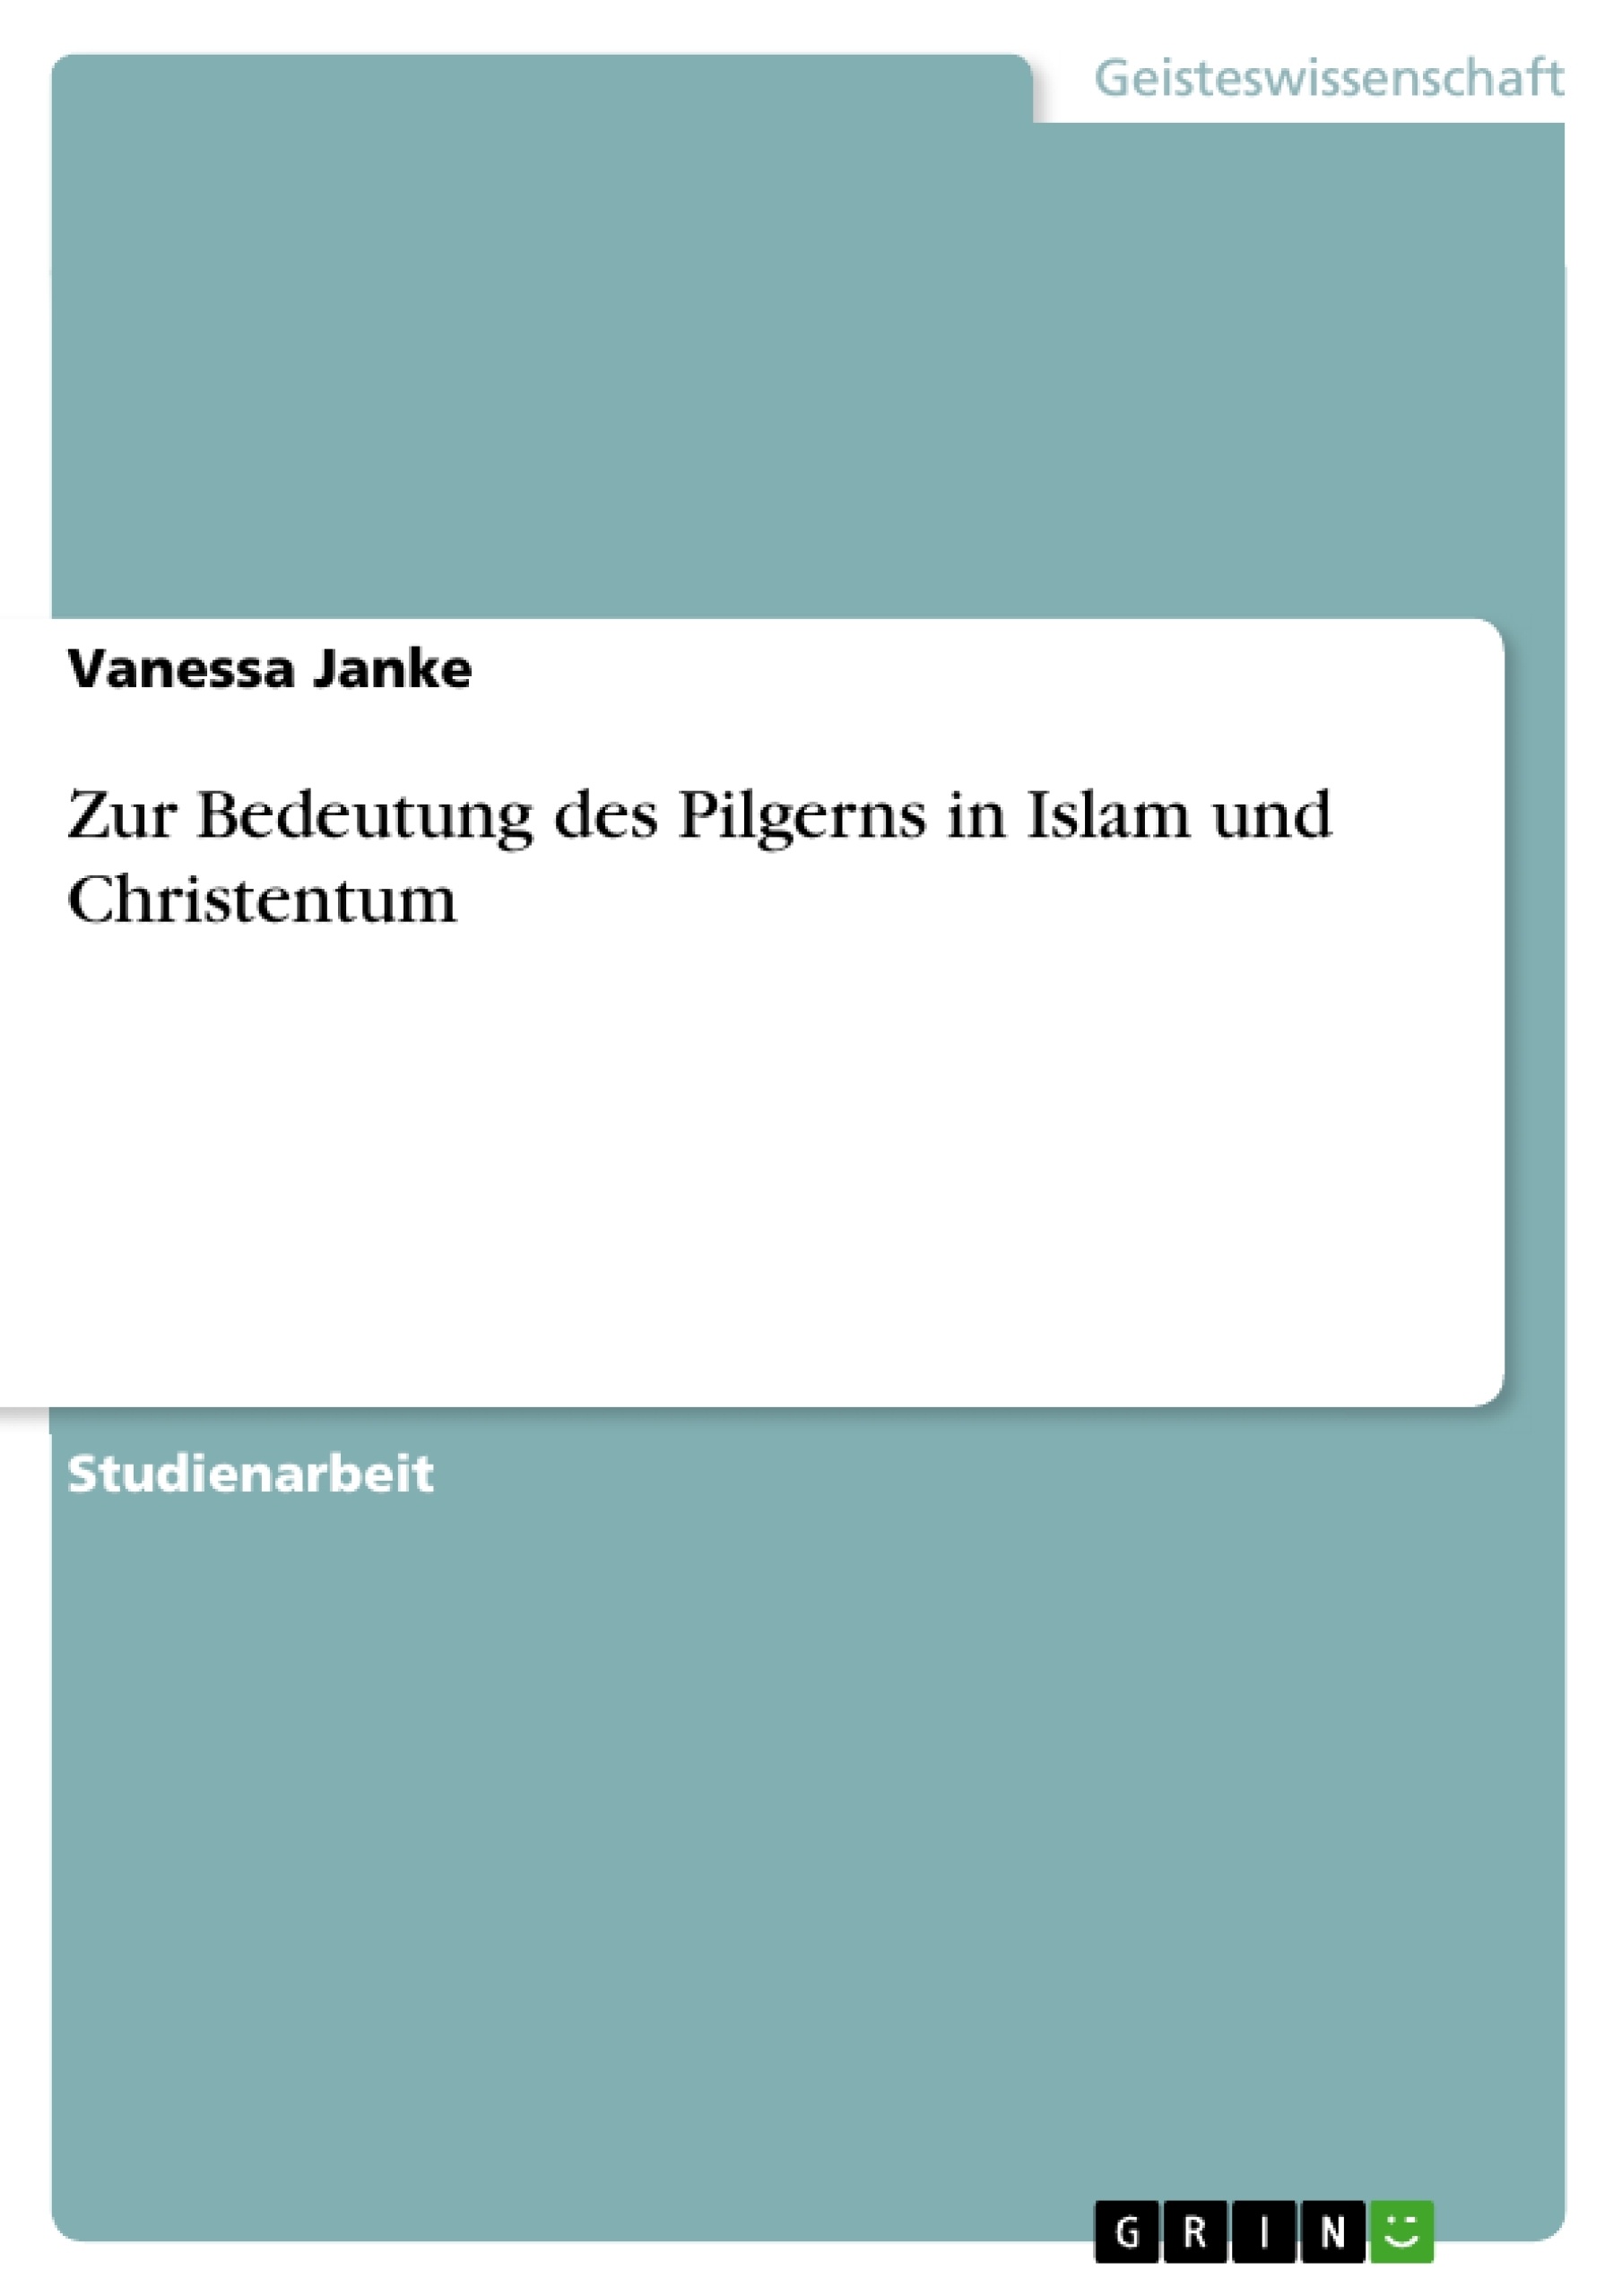 Título: Zur Bedeutung des Pilgerns in Islam und Christentum